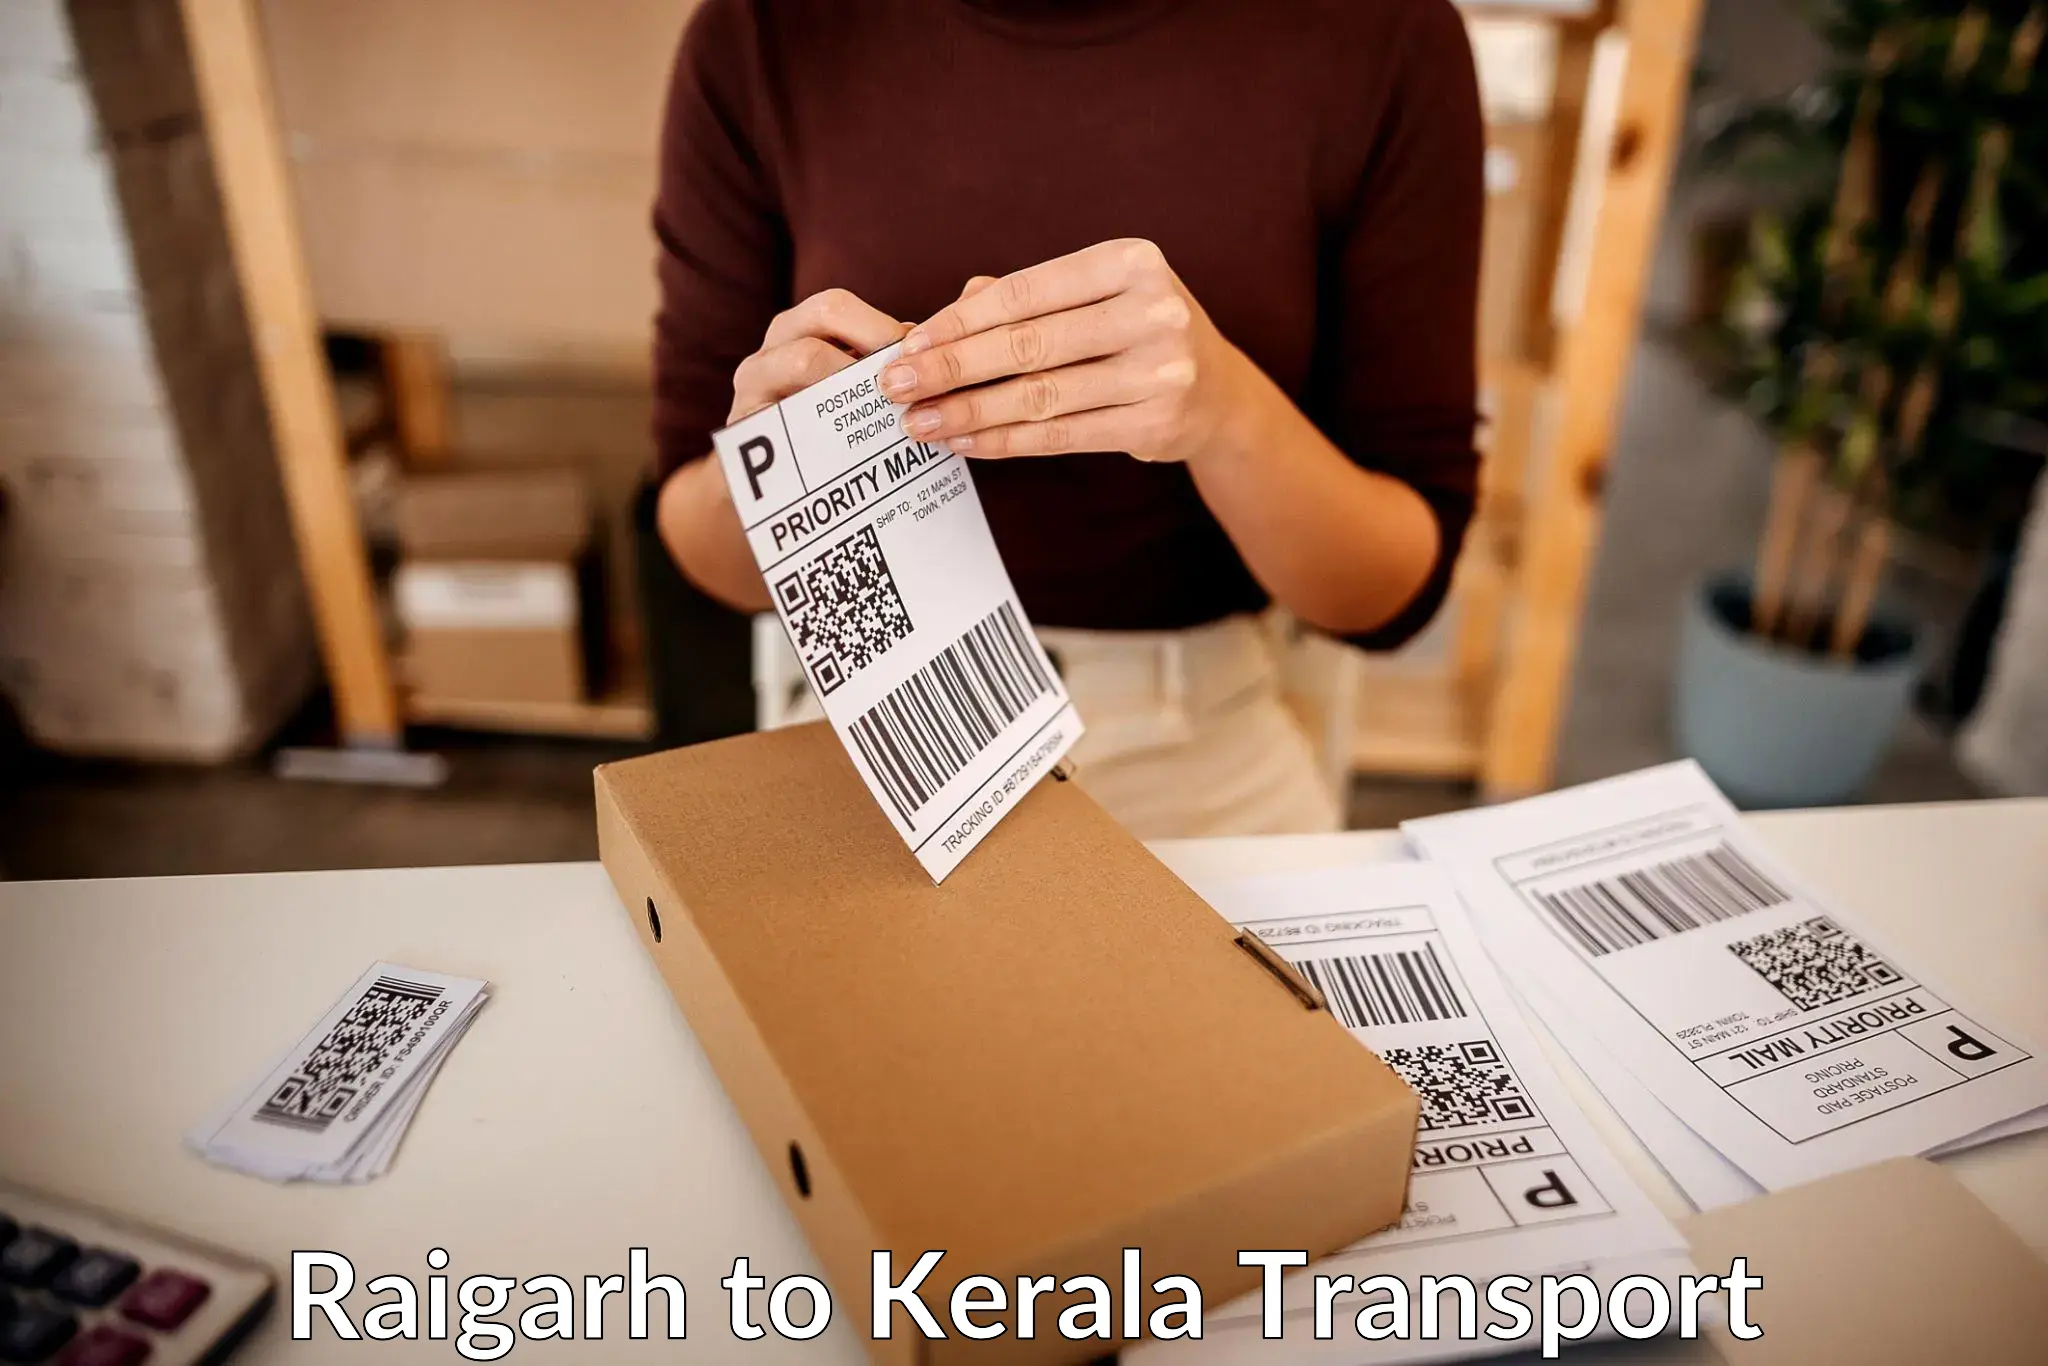 Transport in sharing Raigarh to Koothattukulam